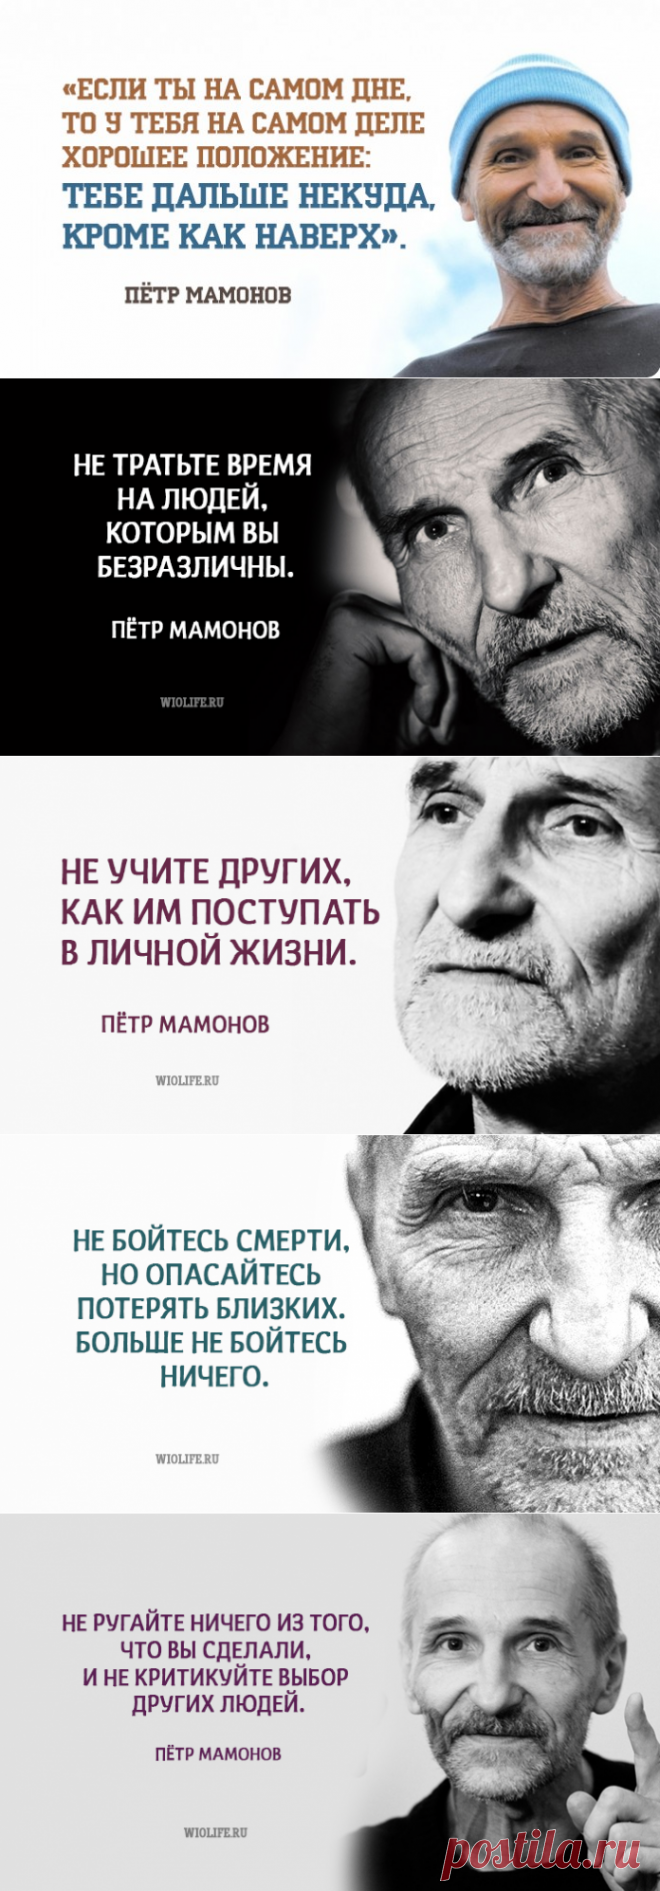 Простые правила жизни от Петра Мамонова